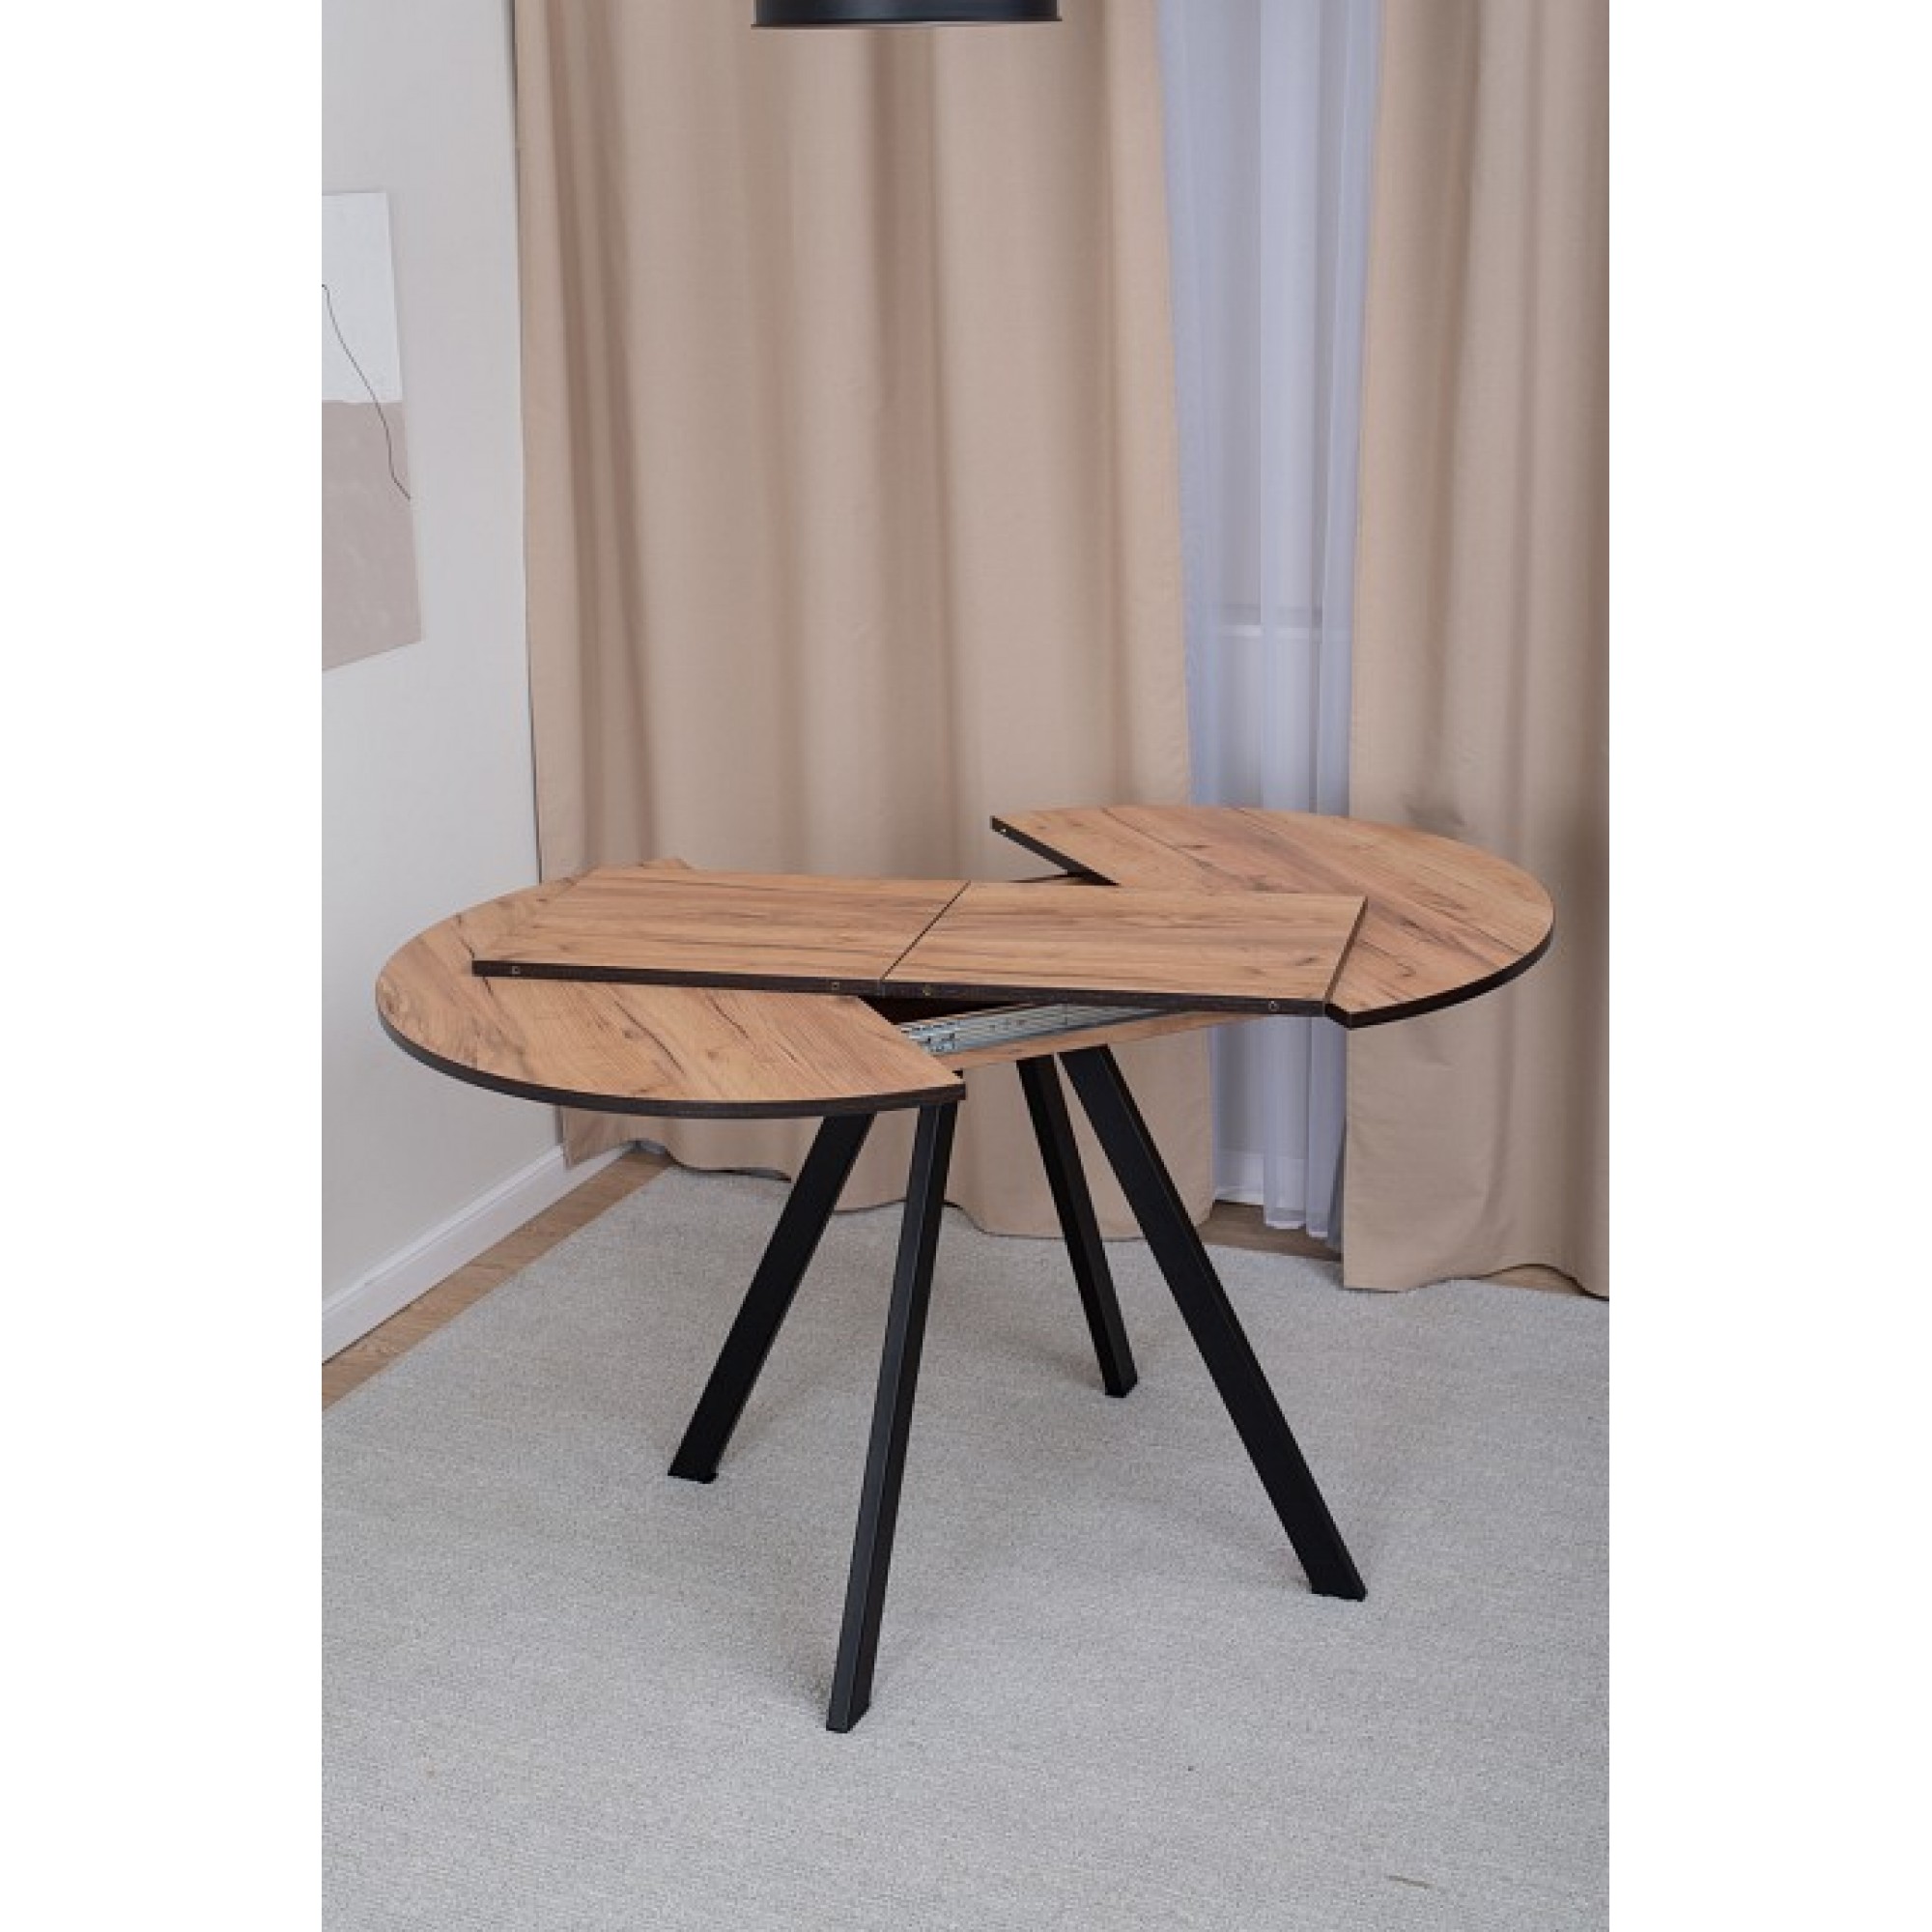 Стол обеденный Вита К древесина коричневая светлая дуб DOM_Vita_K_DK_95_CHR